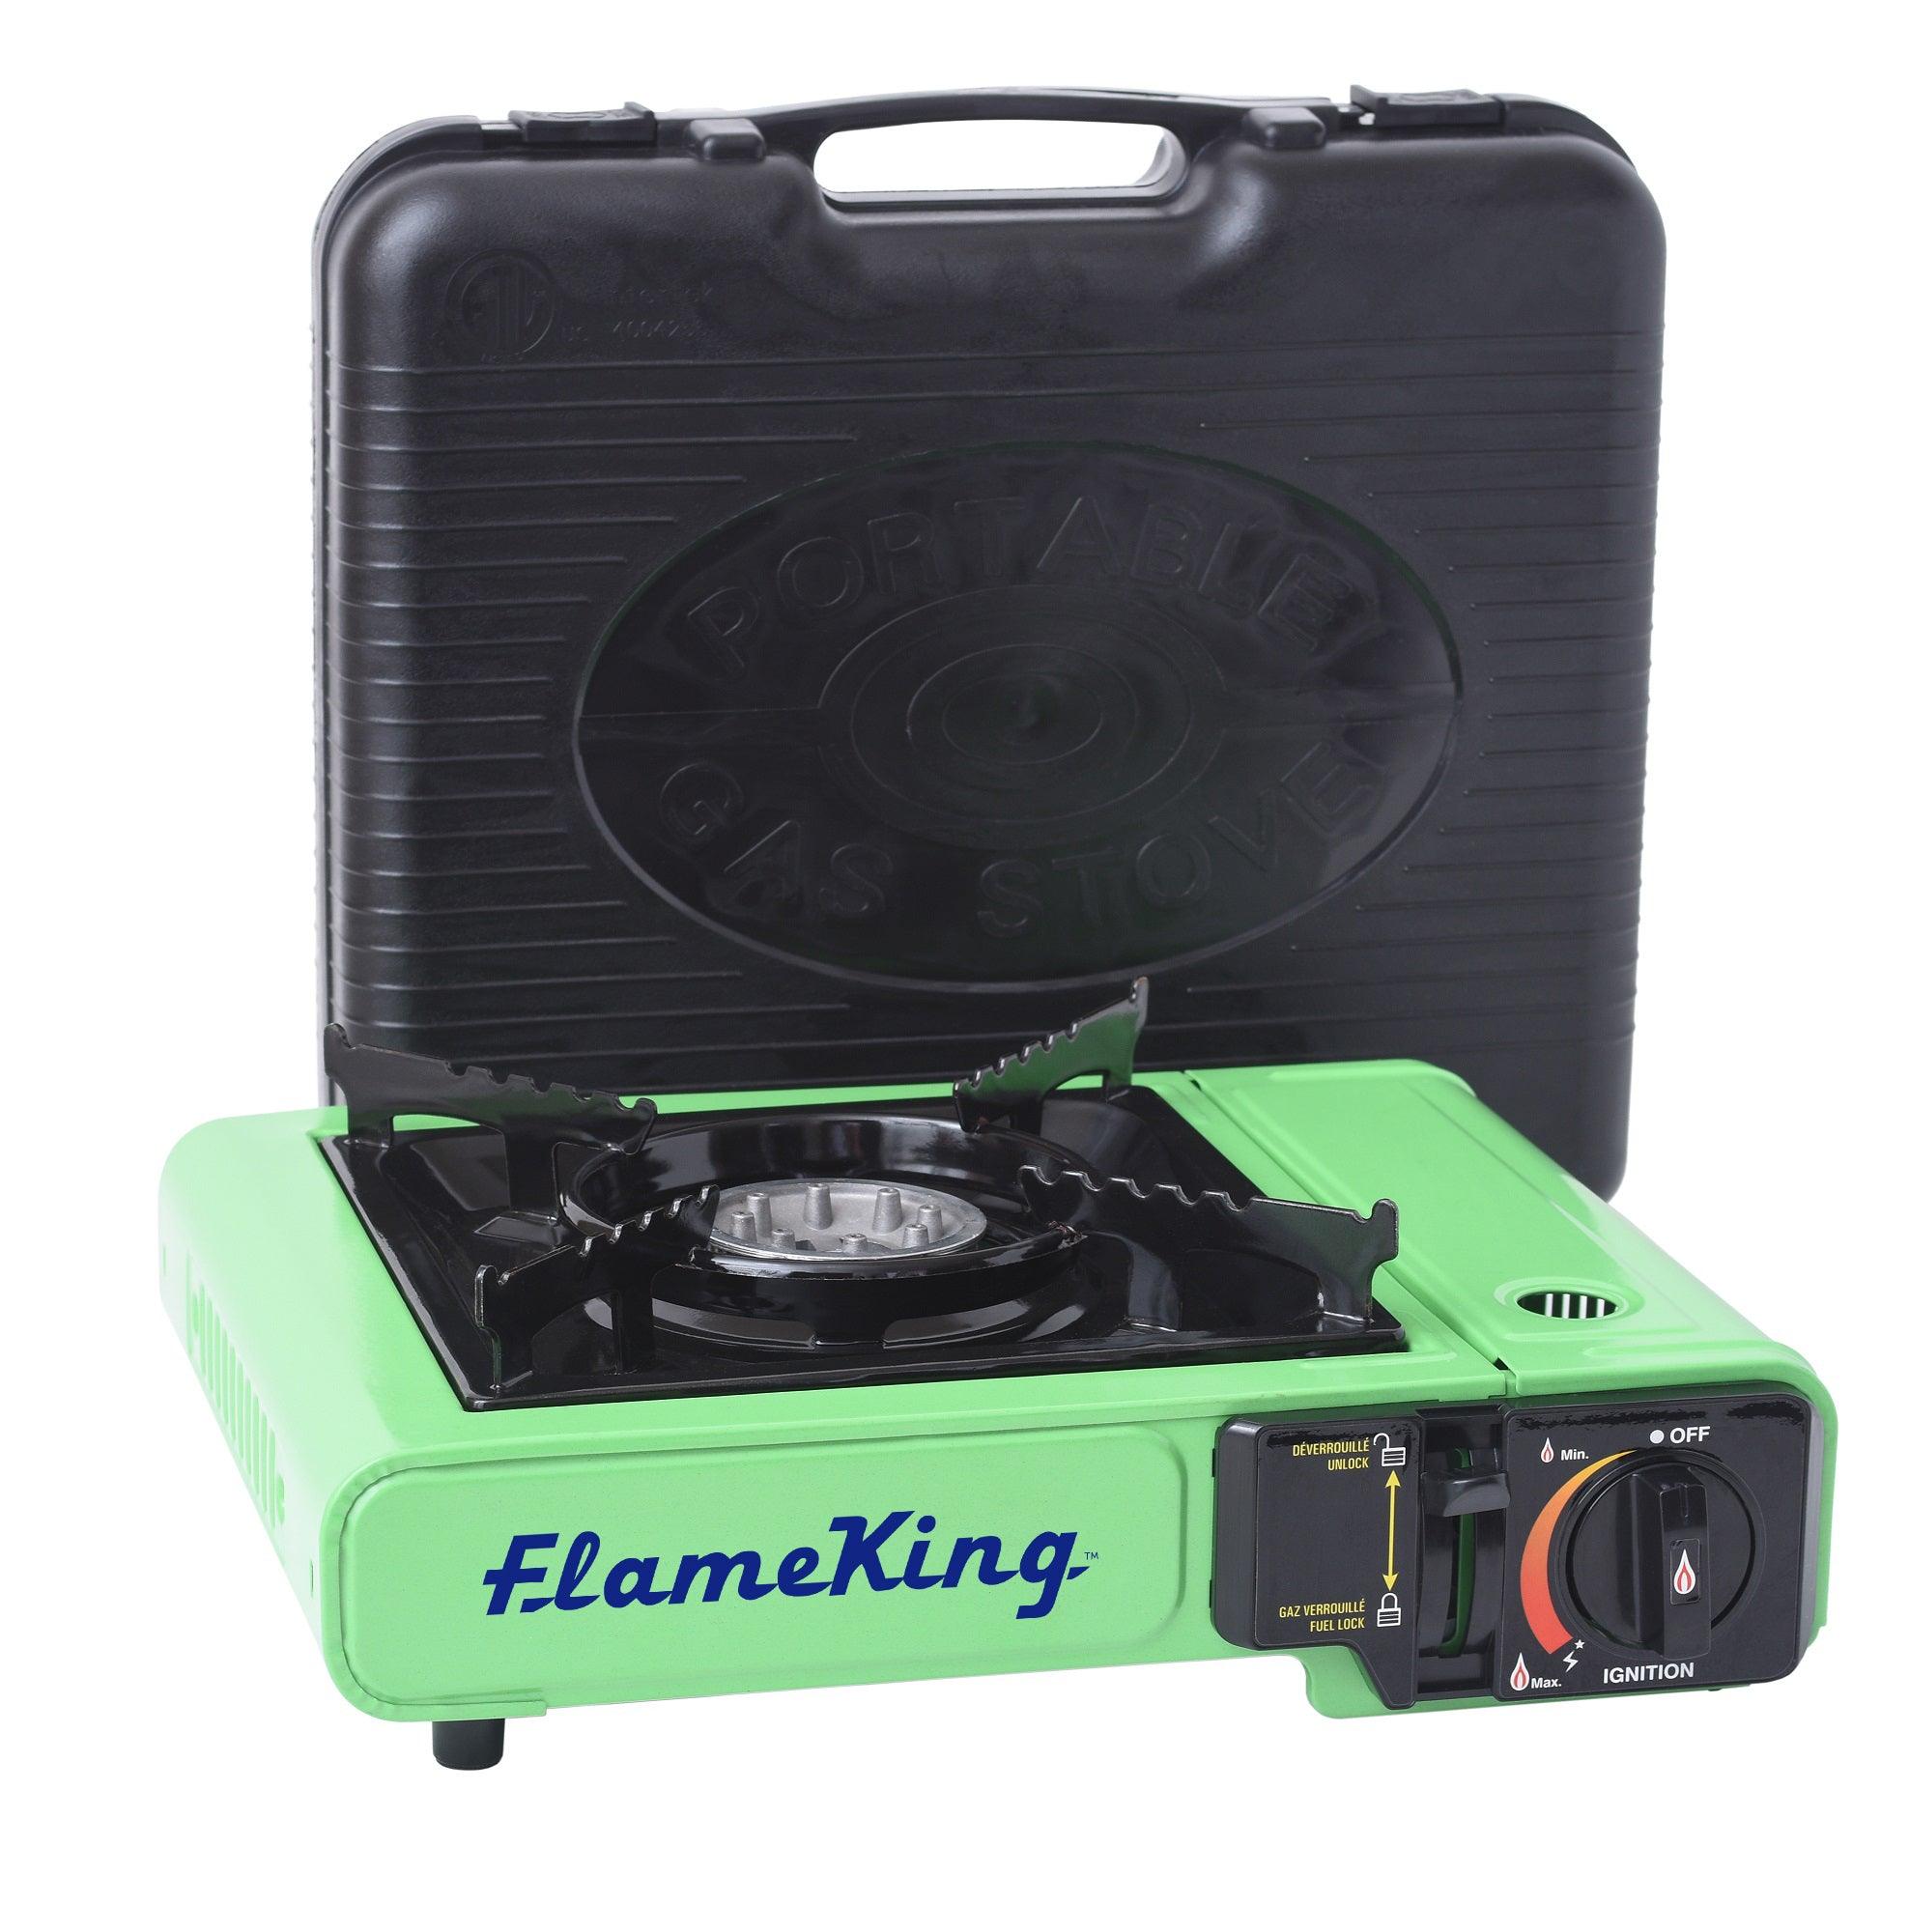 Flame King Portable Butane & Propane Gas Stove with Single Burner - Flame King